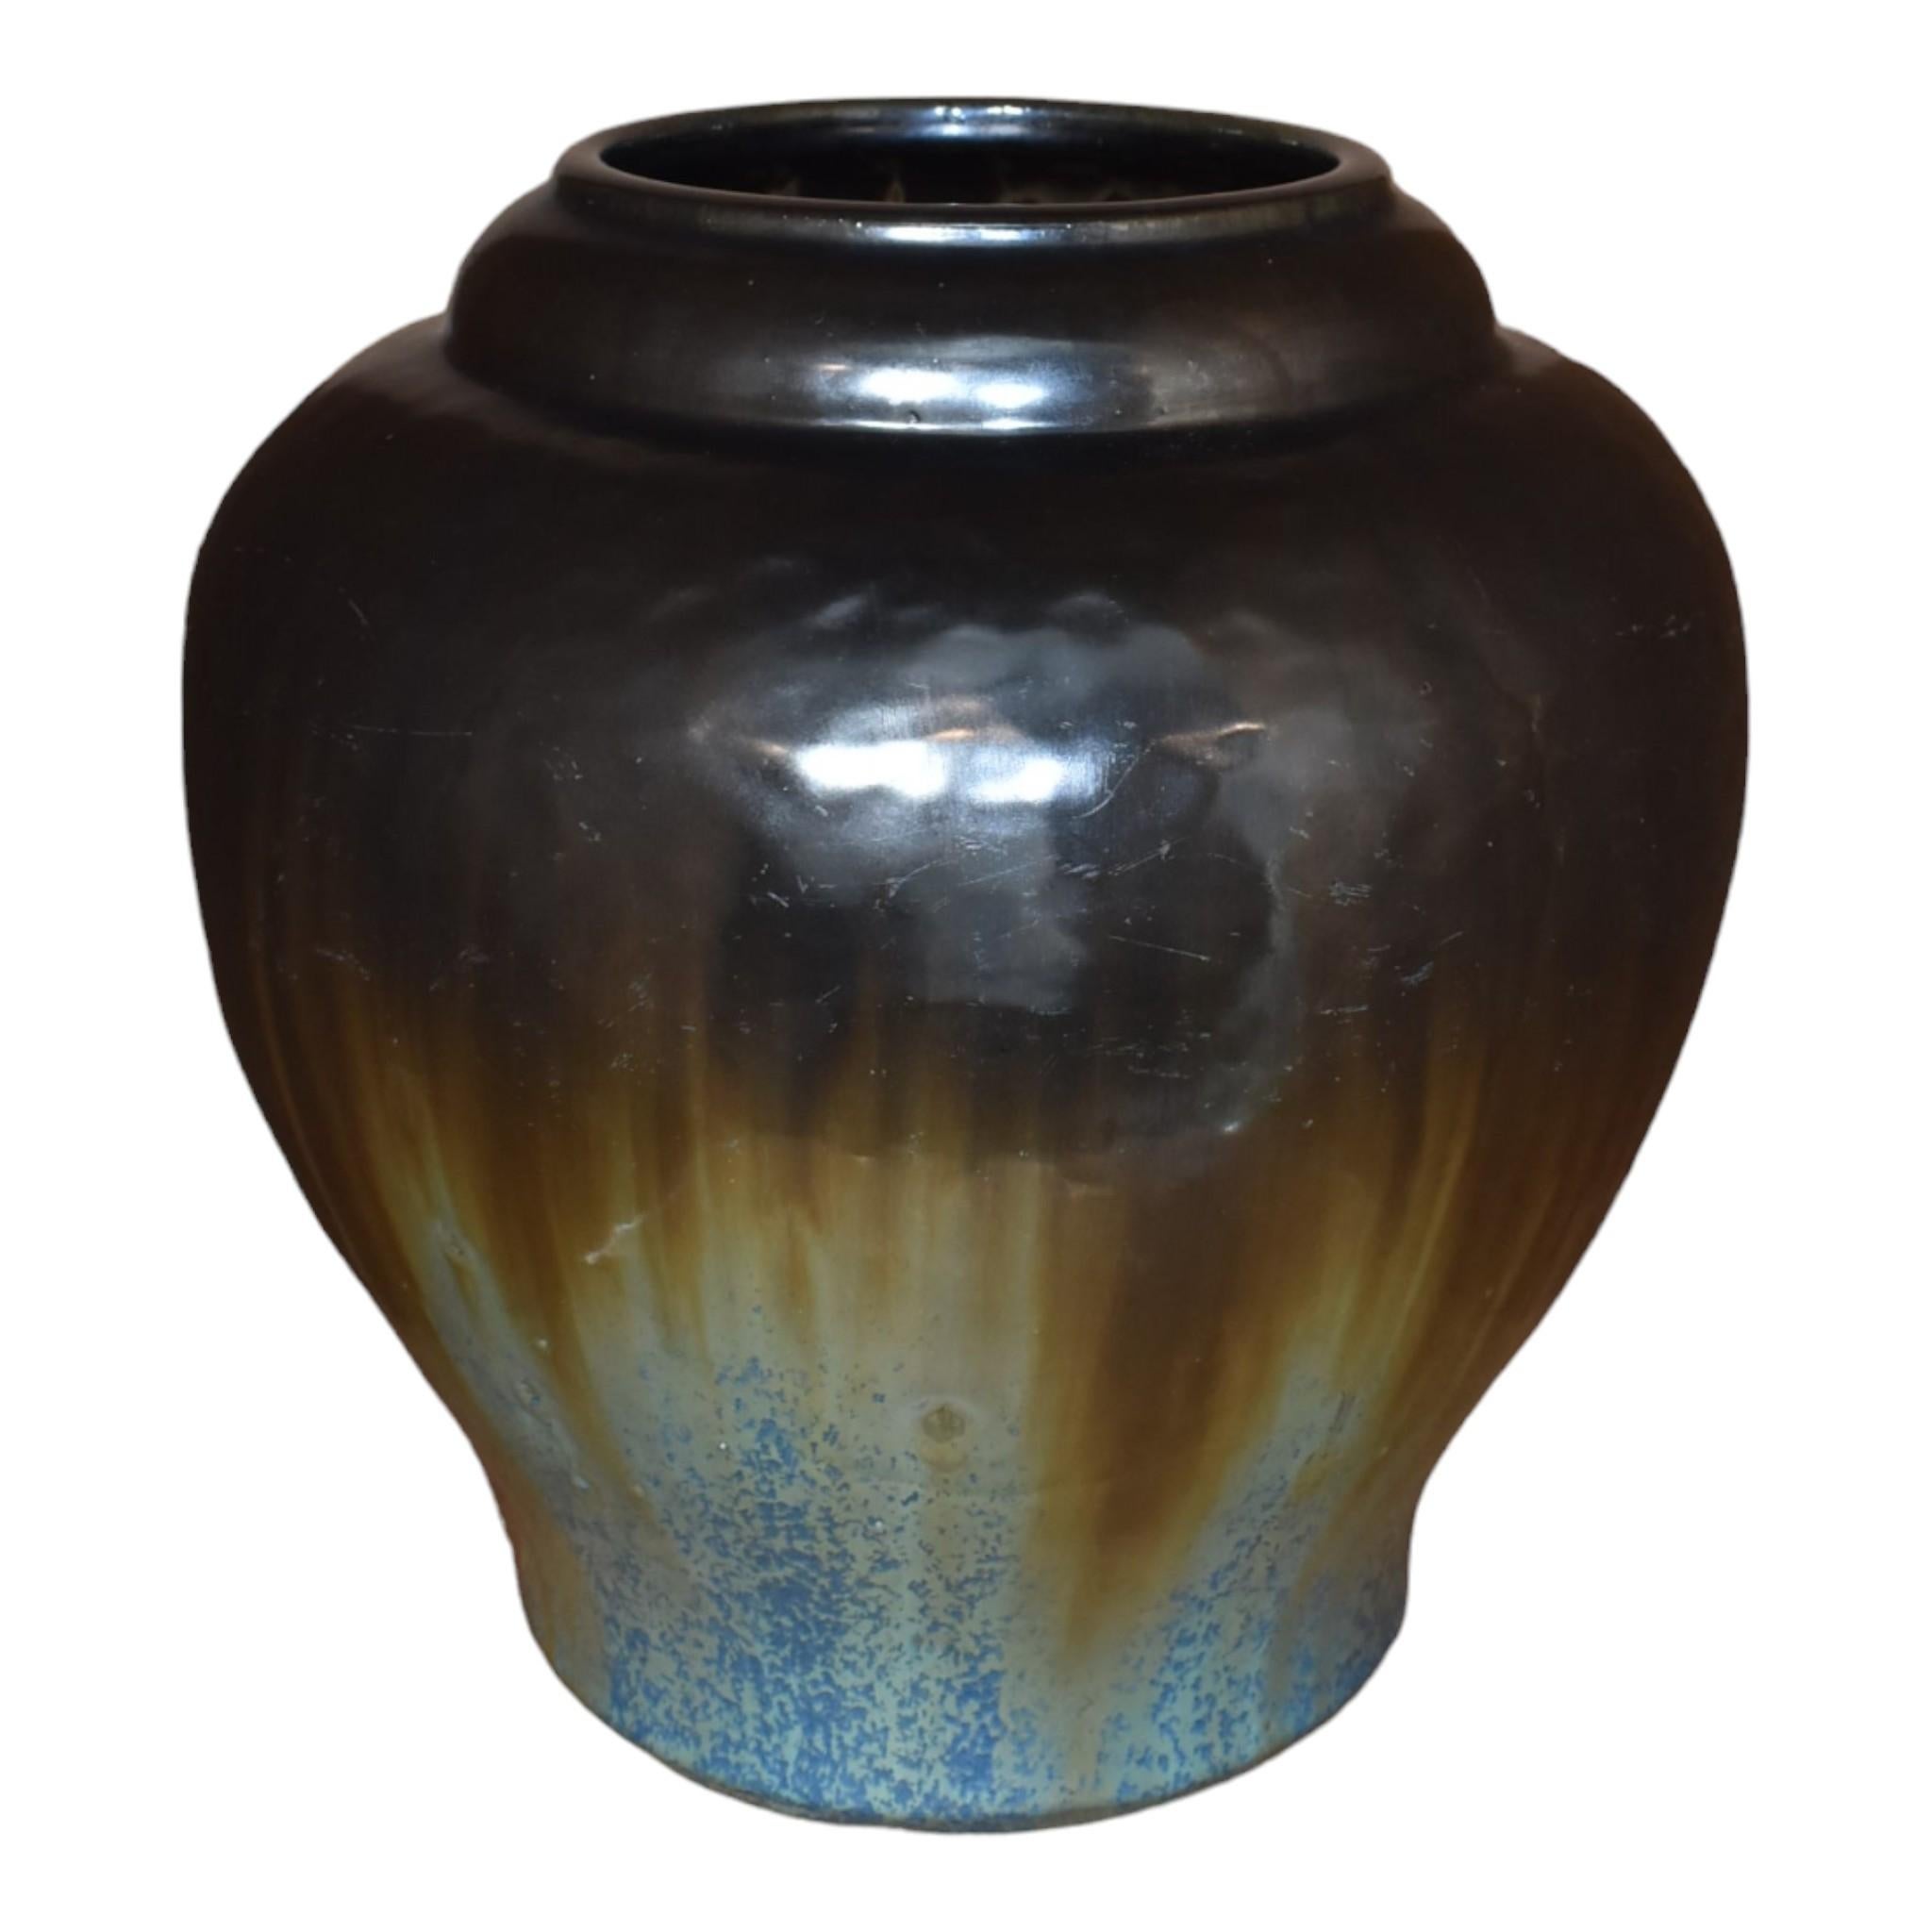 Fulper 1917-23 Arts and Crafts Pottery Keramikvase mit schwarzer und blauer Flambe-Glasur 591
Massive und auffällige Form mit wunderschöner Gun-Metal-Glasur, die über eine kristalline blaue Glasur fließt.
Ausgezeichneter Zustand. Keine Chips, Risse,